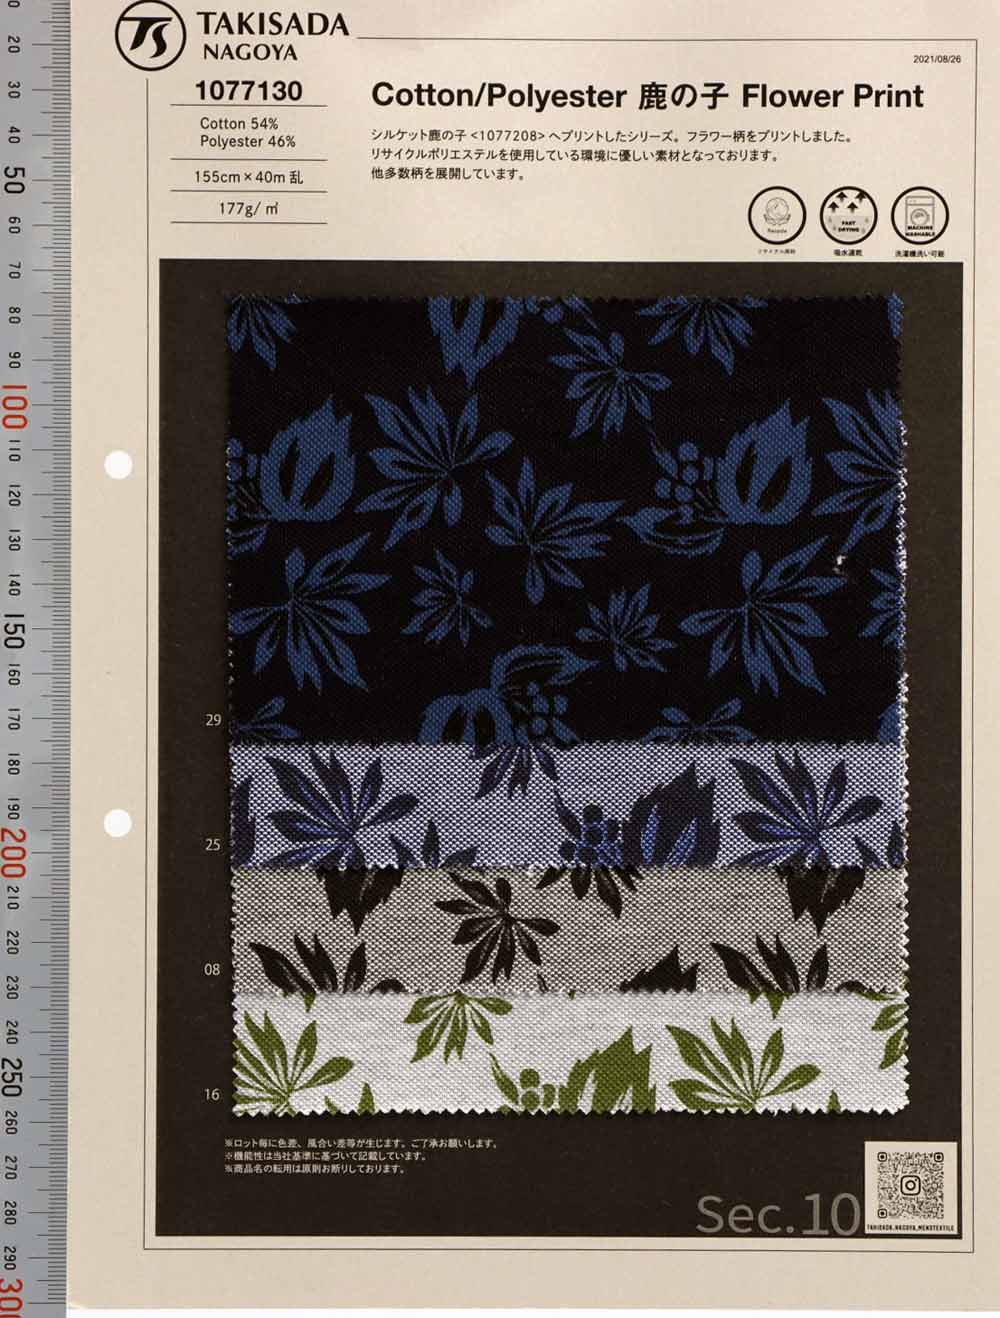 1077130 Estampado De Flores TC Moss Stitch[Fabrica Textil] Takisada Nagoya